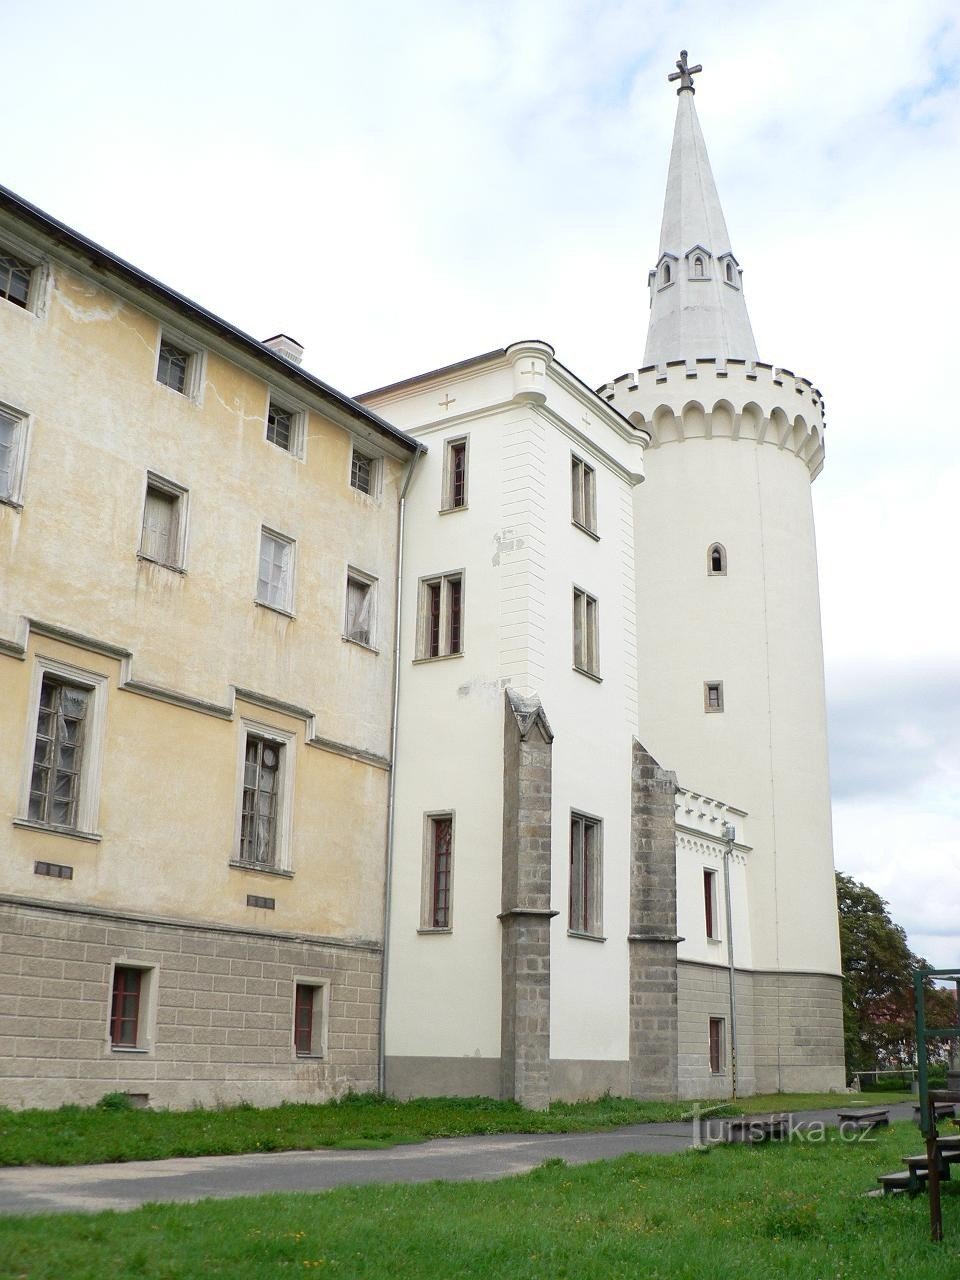 Burg Bor, Turm